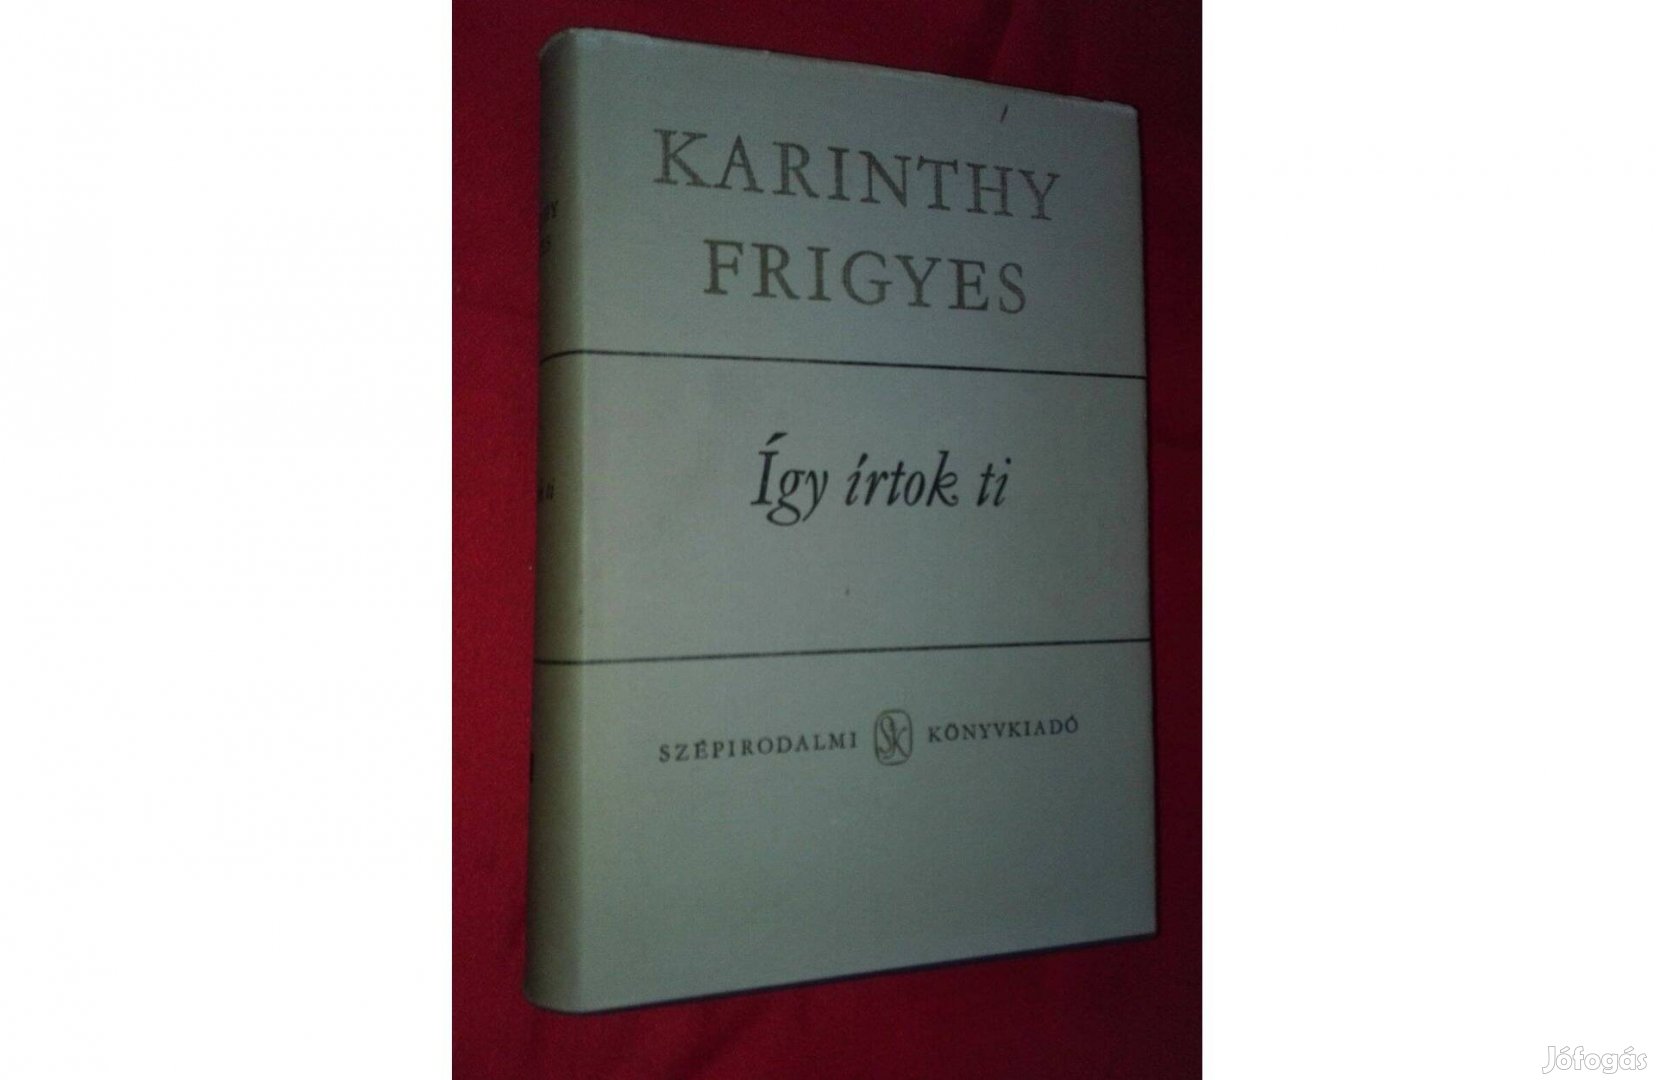 Karinthy Frigyes: Így írtok ti, paródiák, első kötet